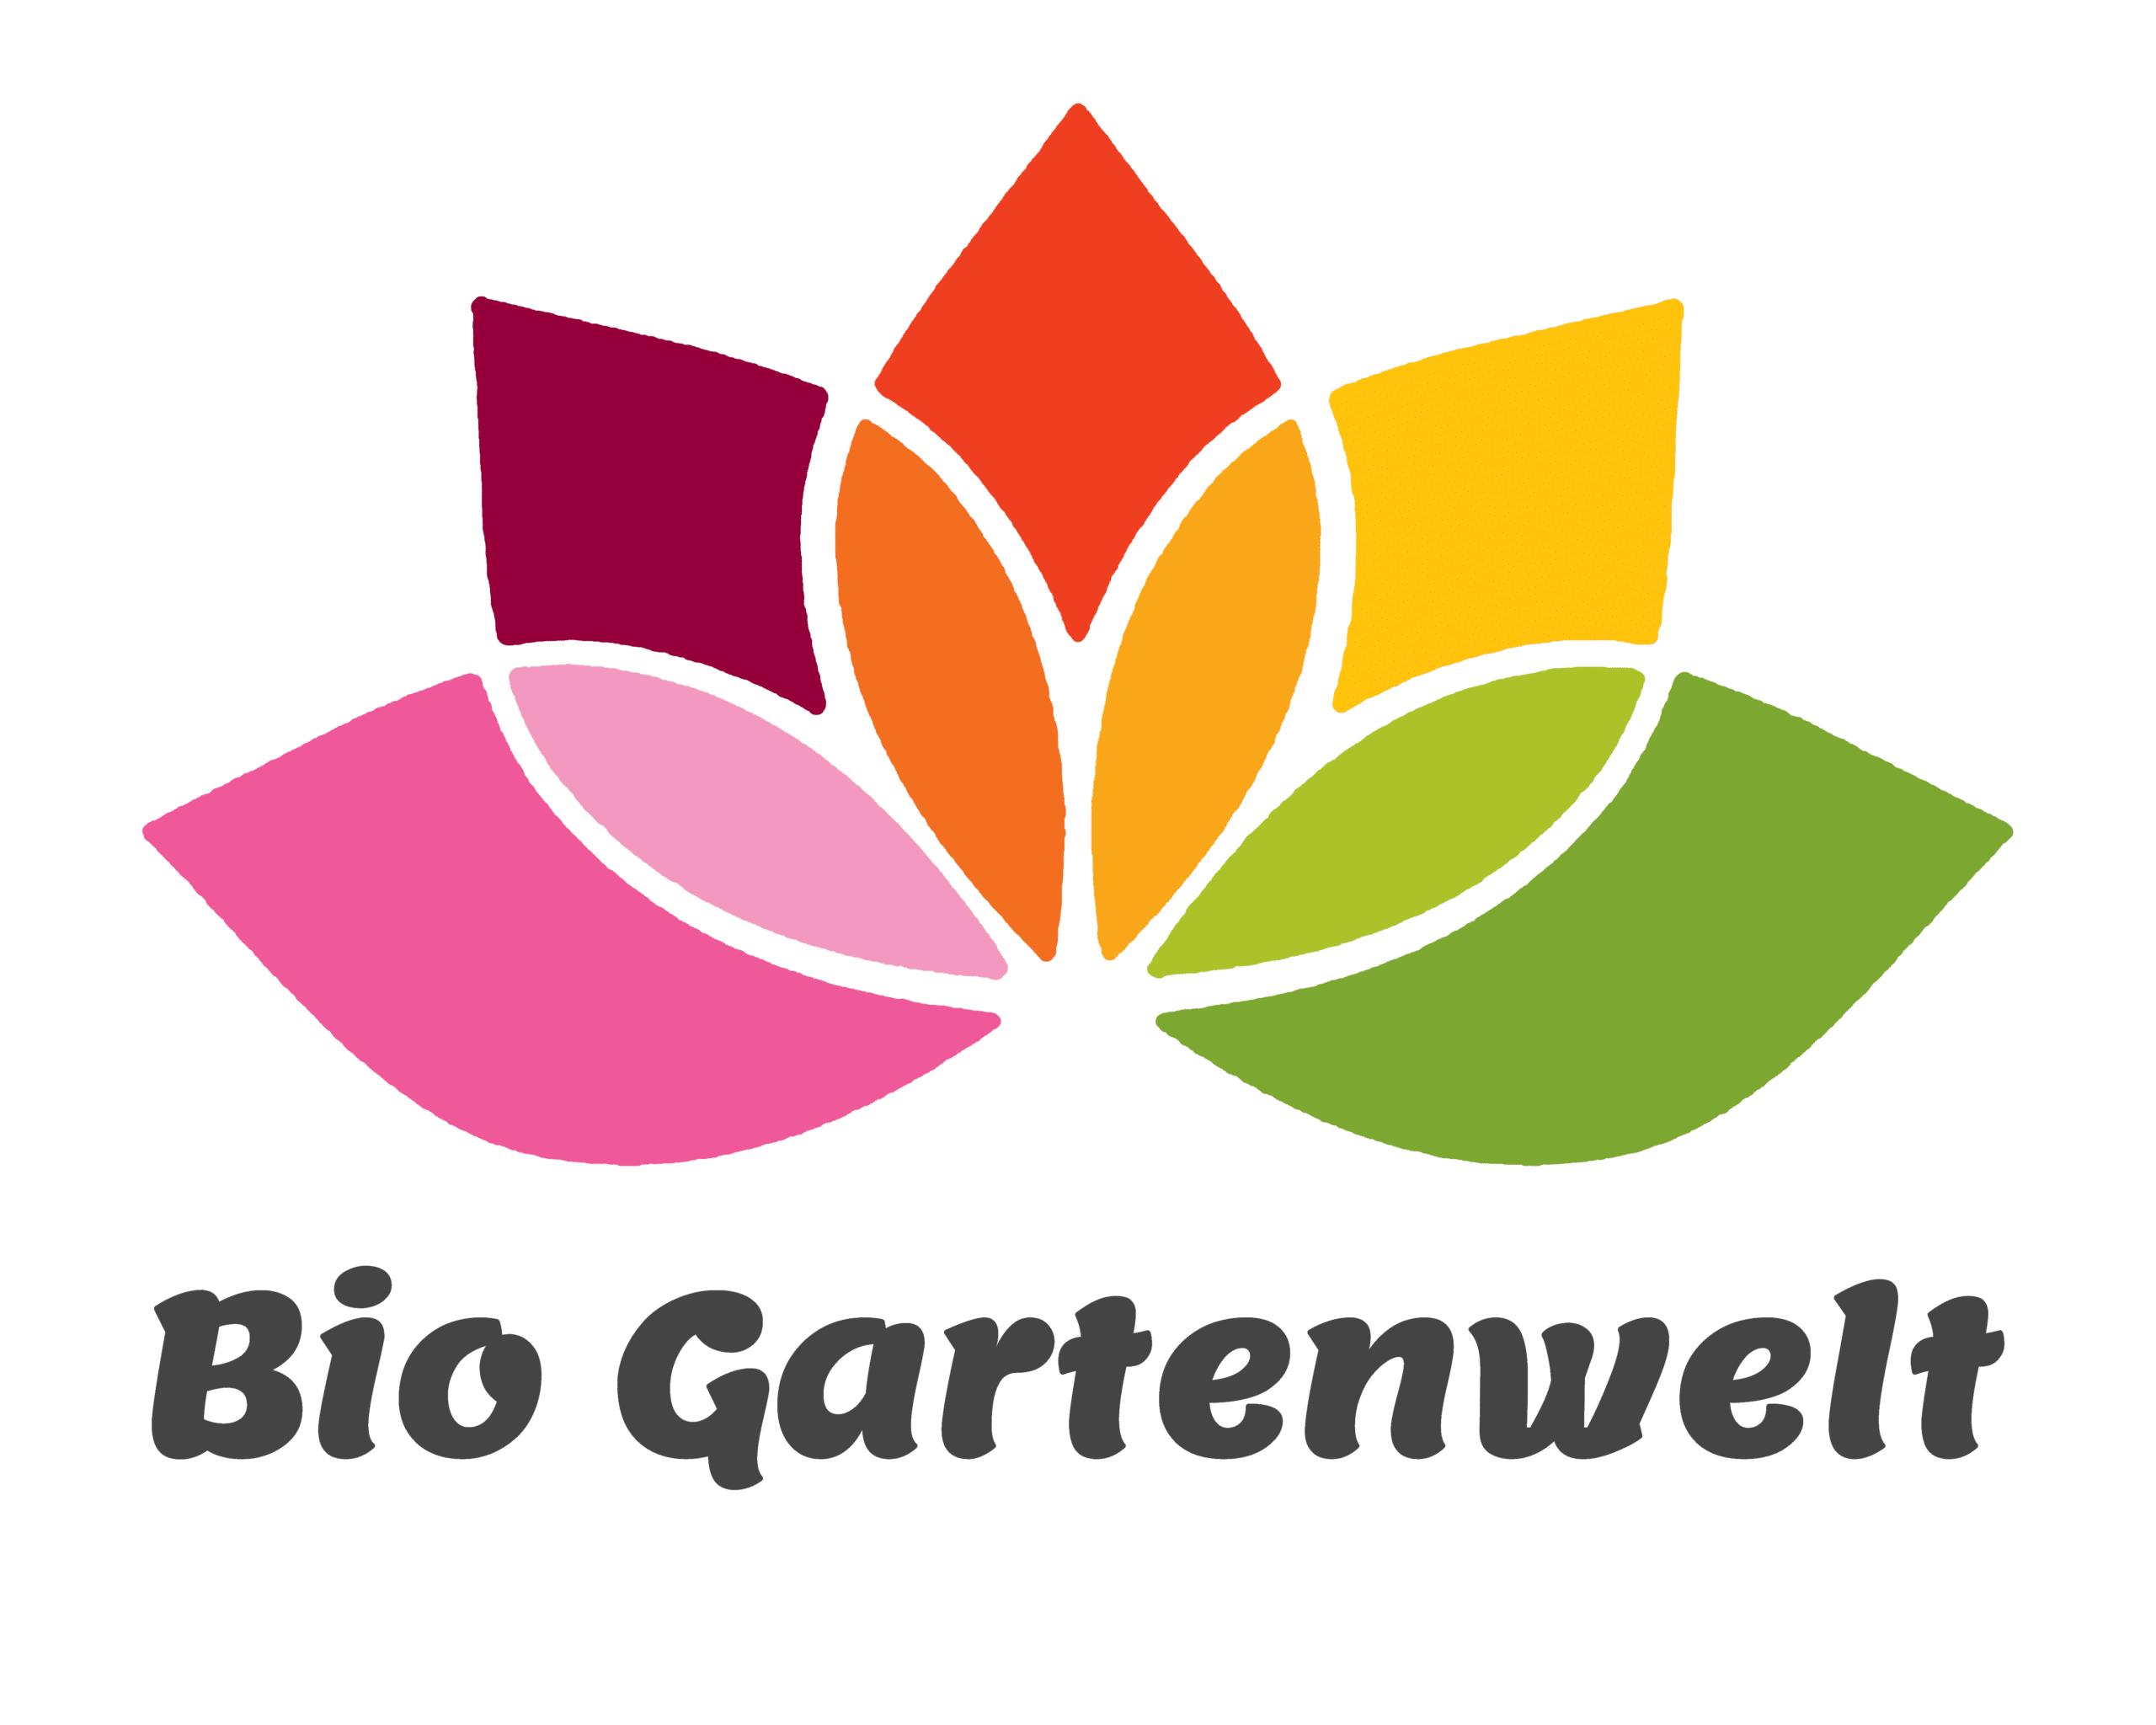 bio-gartenwelt.de